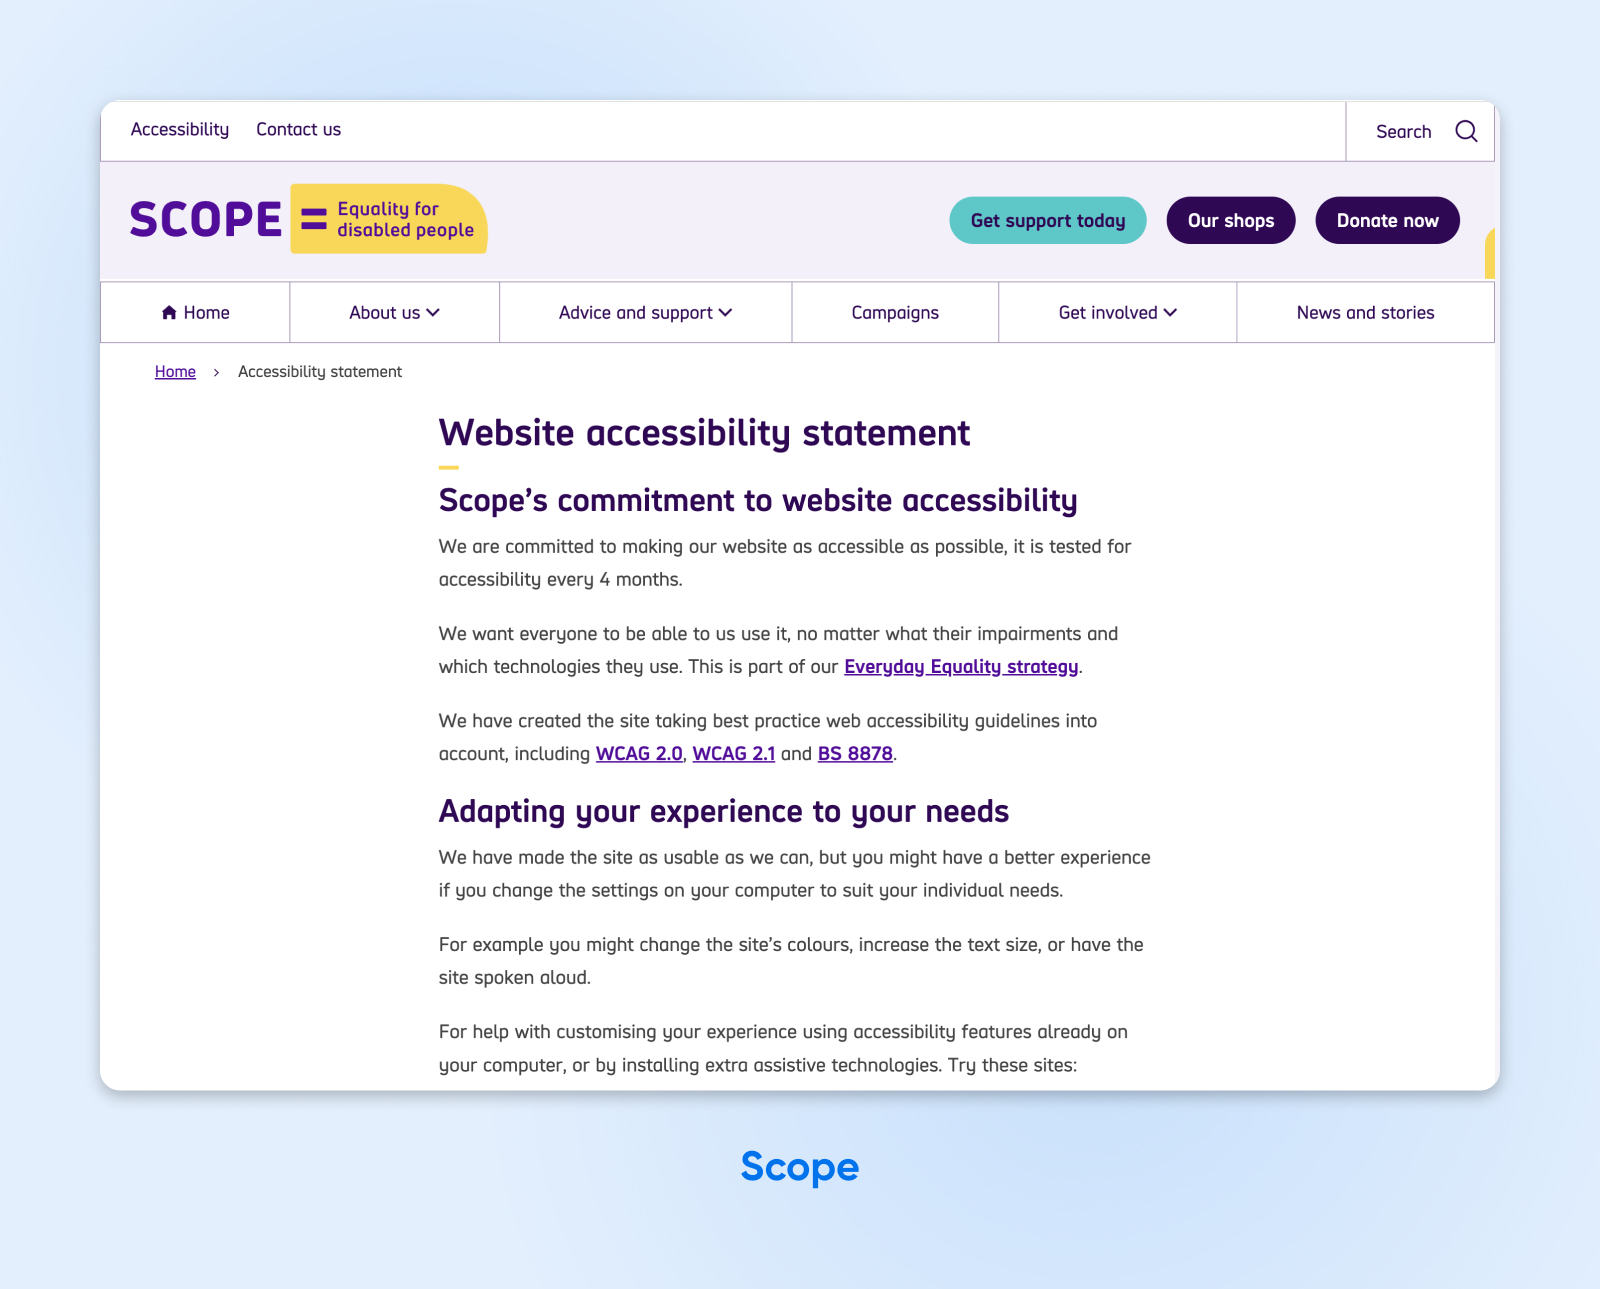 Página de declaración de accesibilidad de Scope que describe sus compromisos y adapta la experiencia a las necesidades de los usuarios.